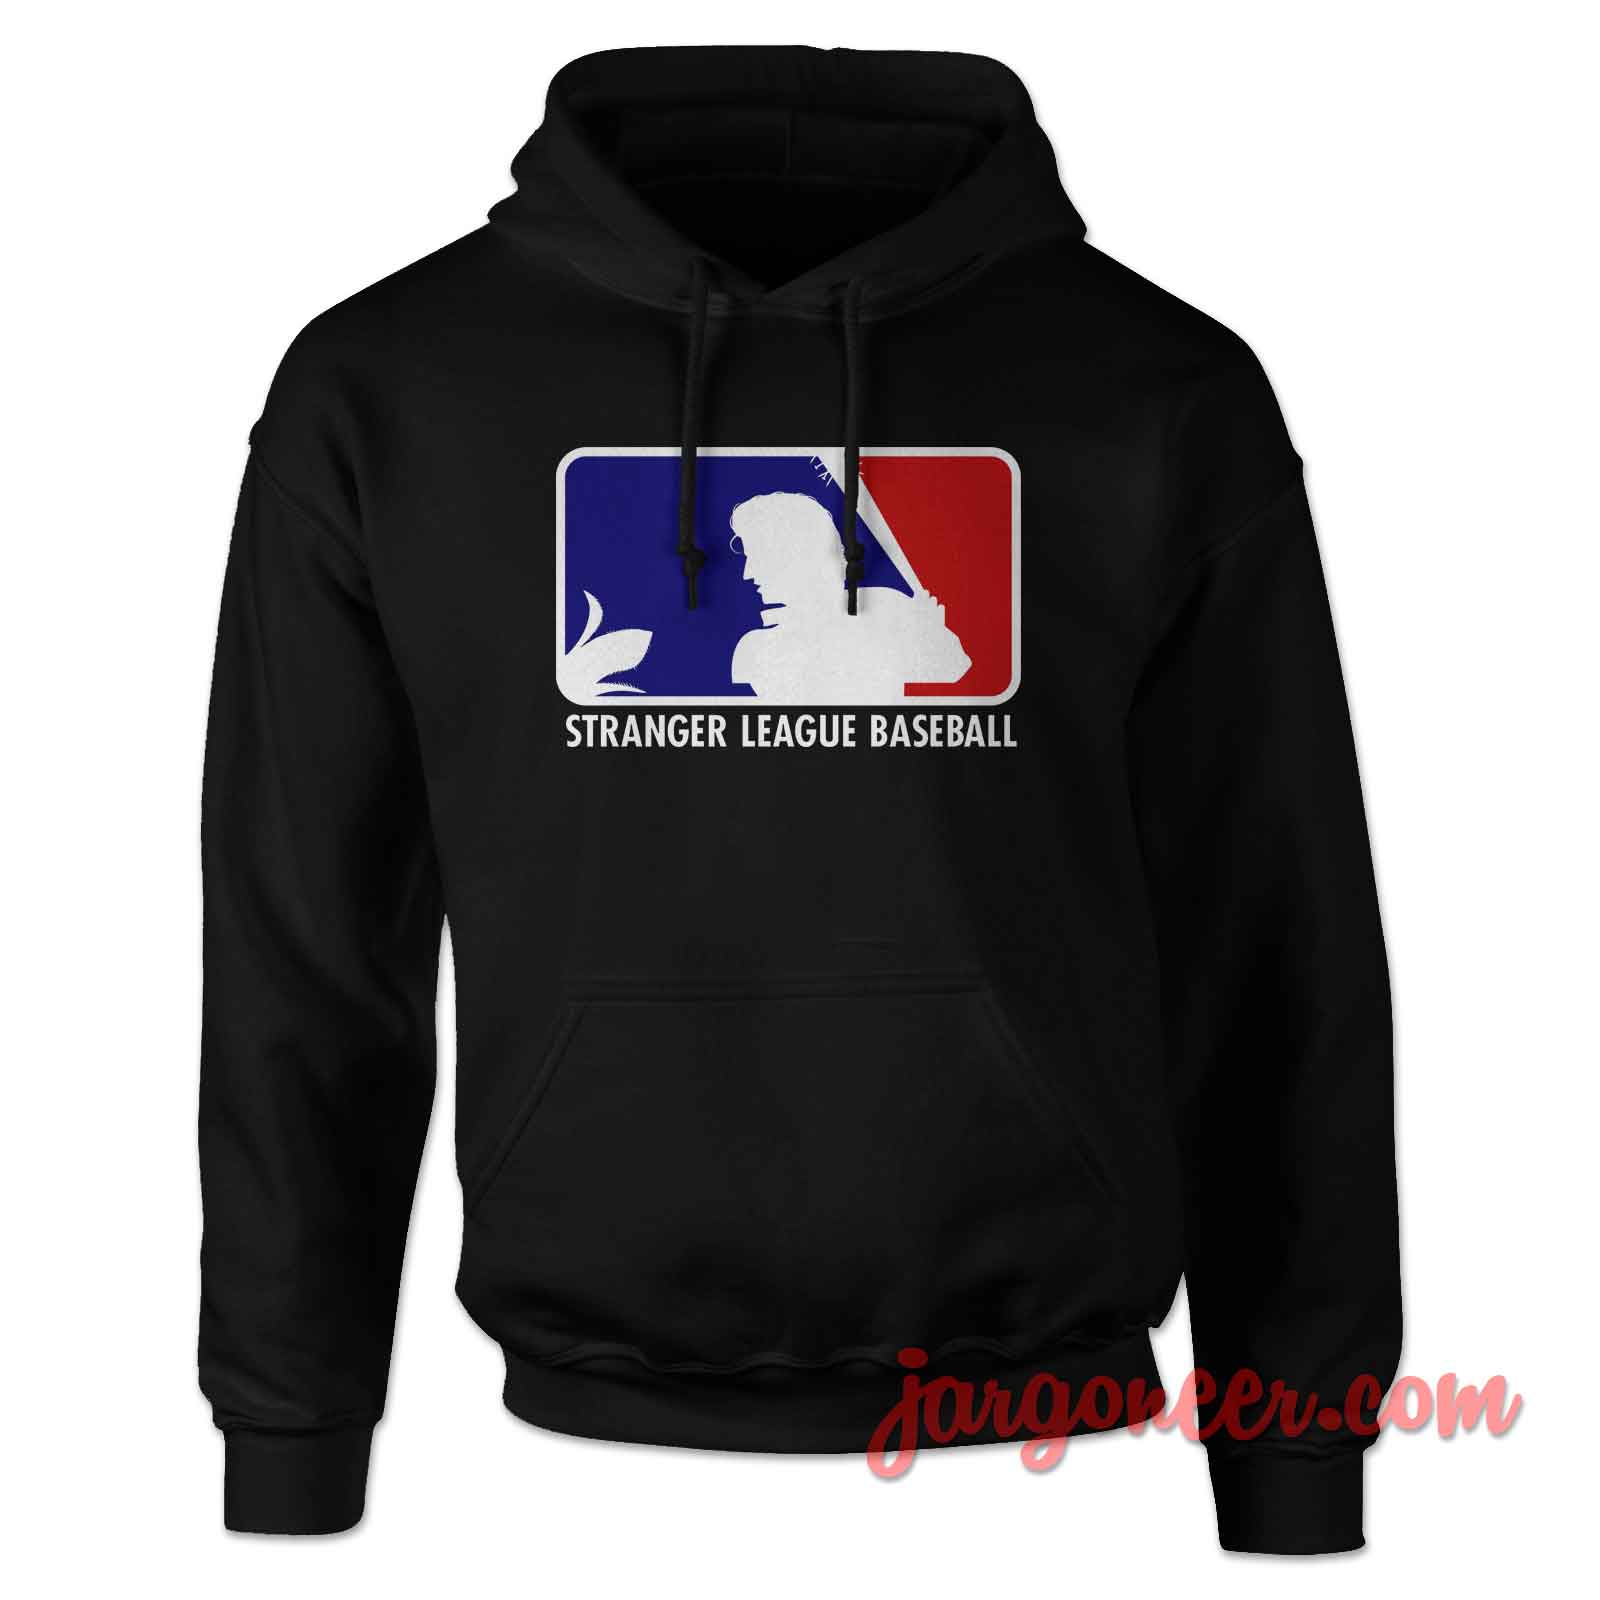 Stranger League Baseball - Shop Unique Graphic Cool Shirt Designs